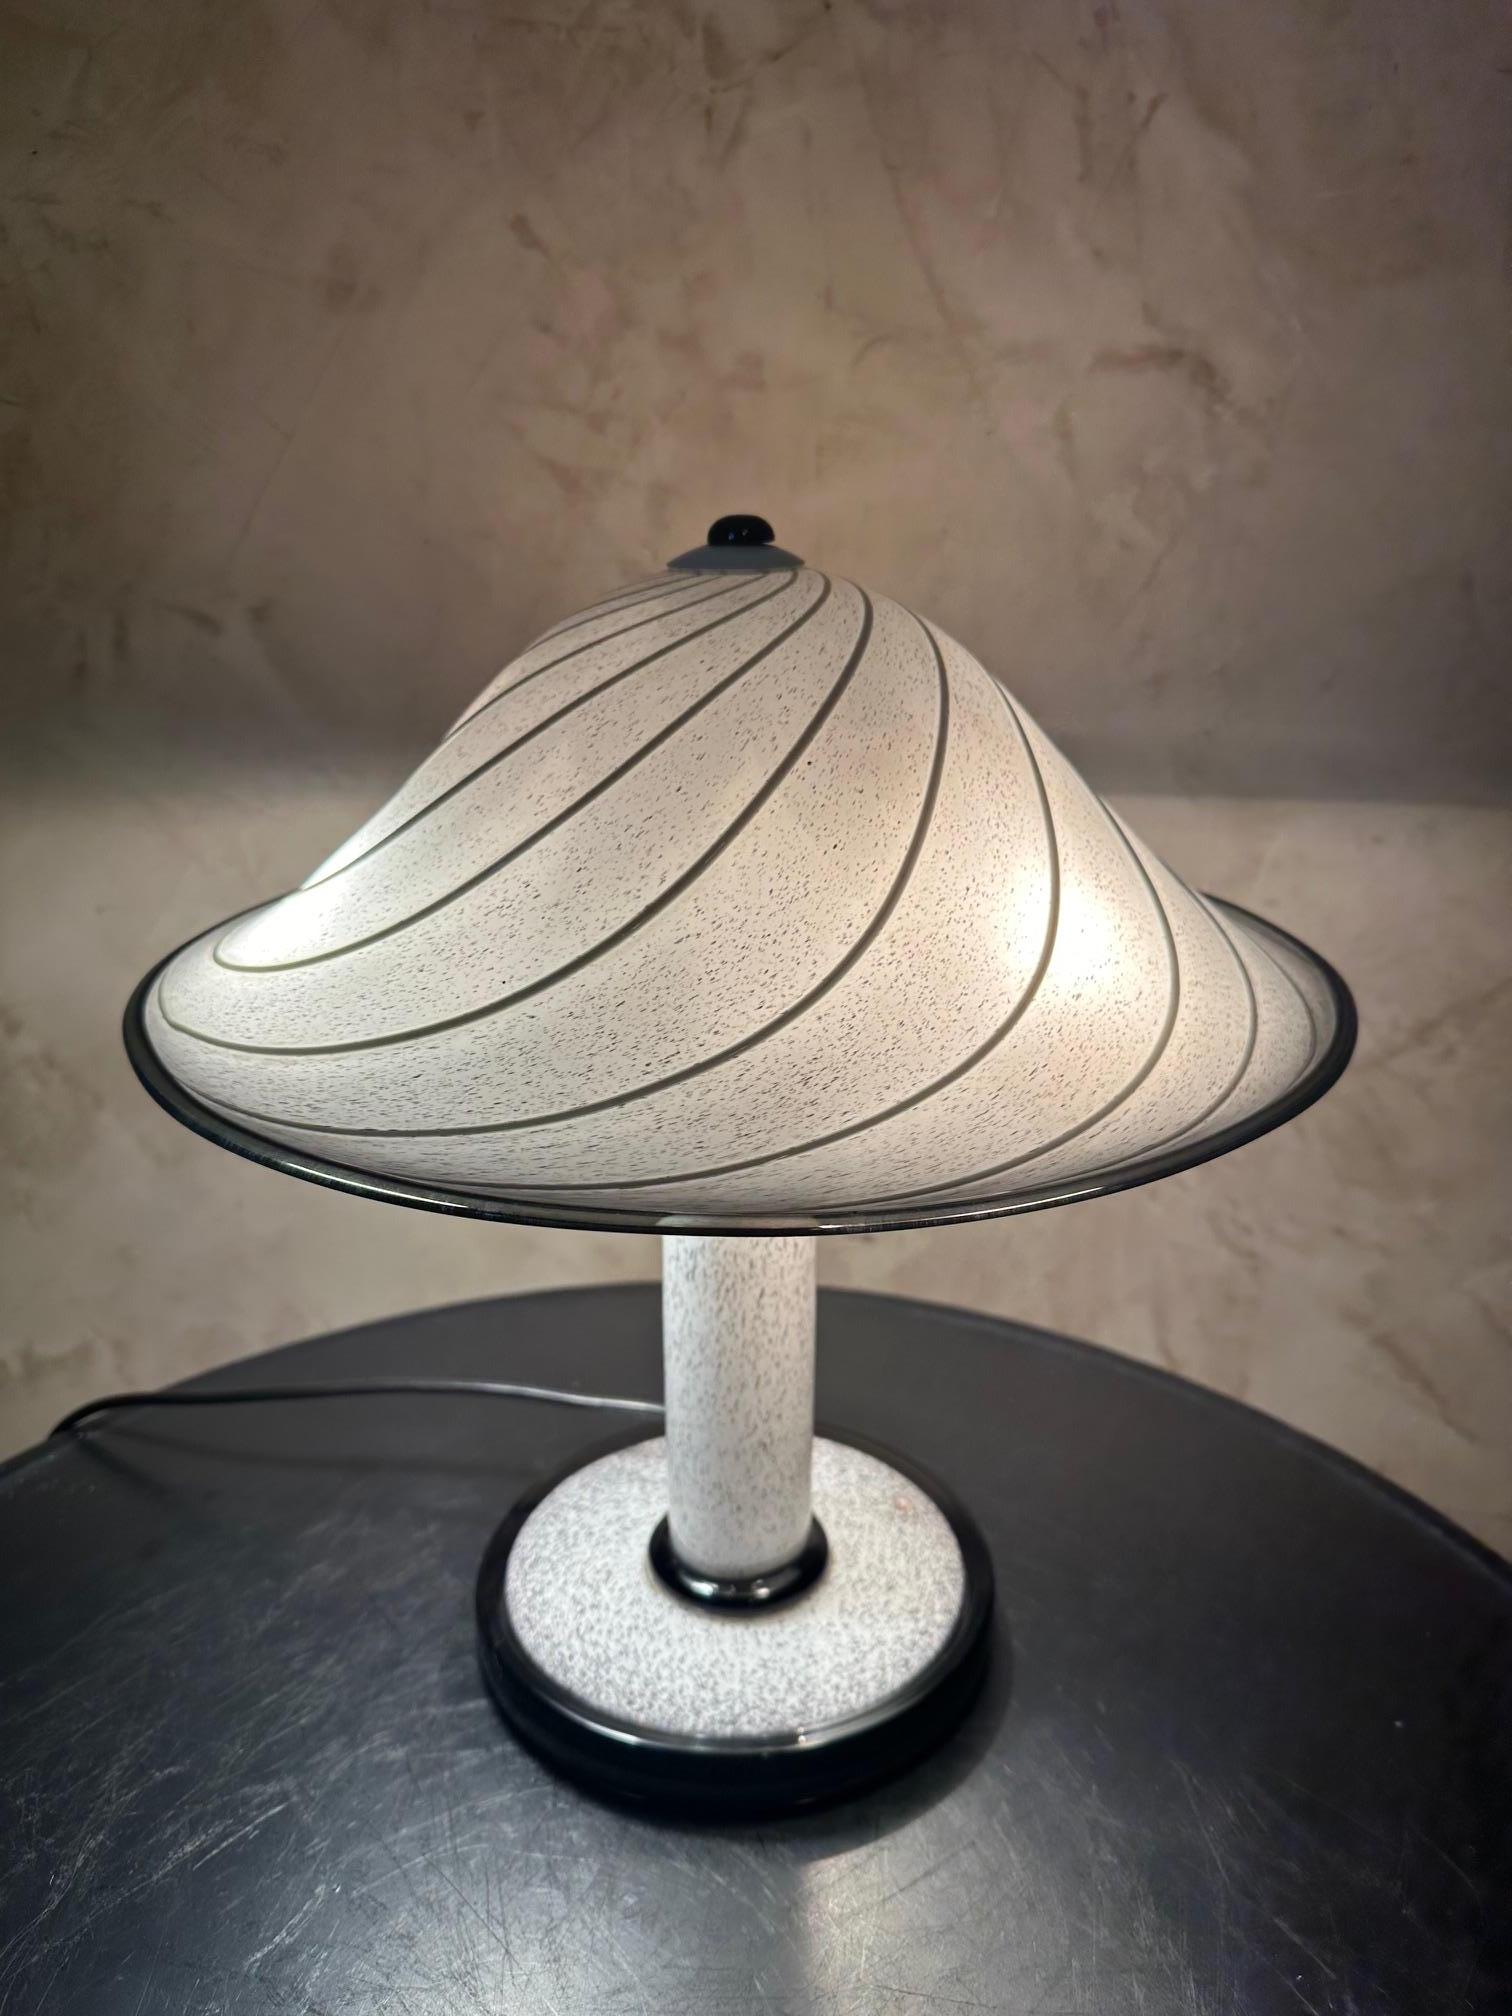 Magnifique lampe en verre de Murano datant des années 1950 en très bon état.
Couleur mouchetée de blanc et de noir. Abat-jour en forme de champignon. 
Trois ampoules à vis. Label du fabricant 